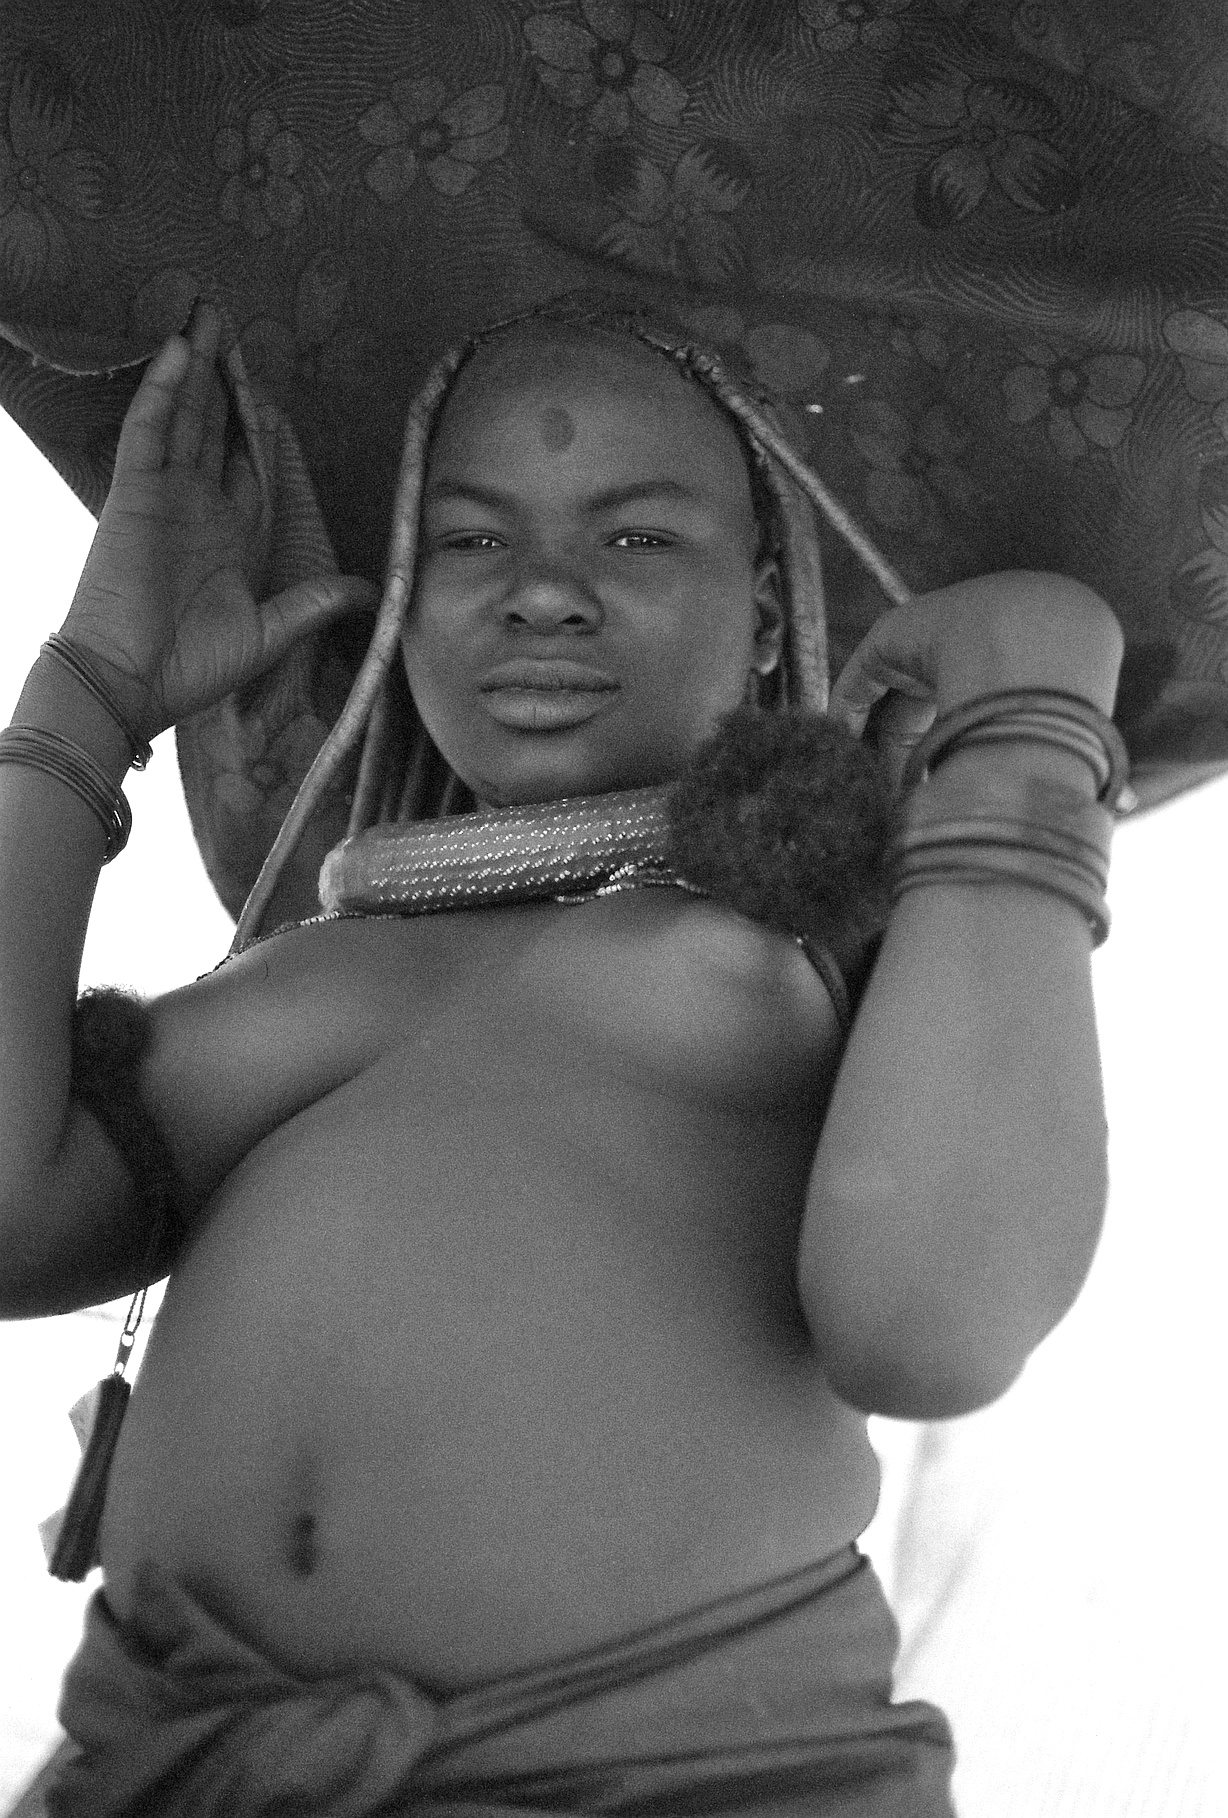 Himba 01